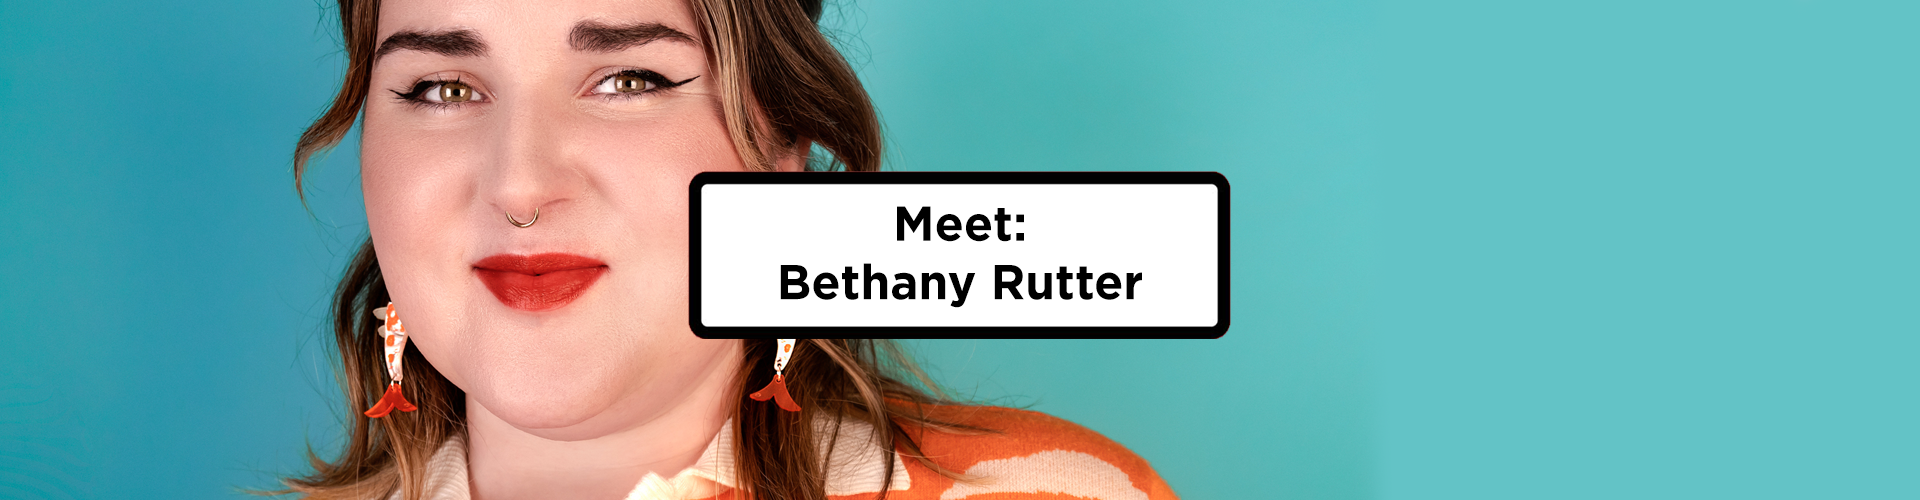 Meet: Bethany Rutter